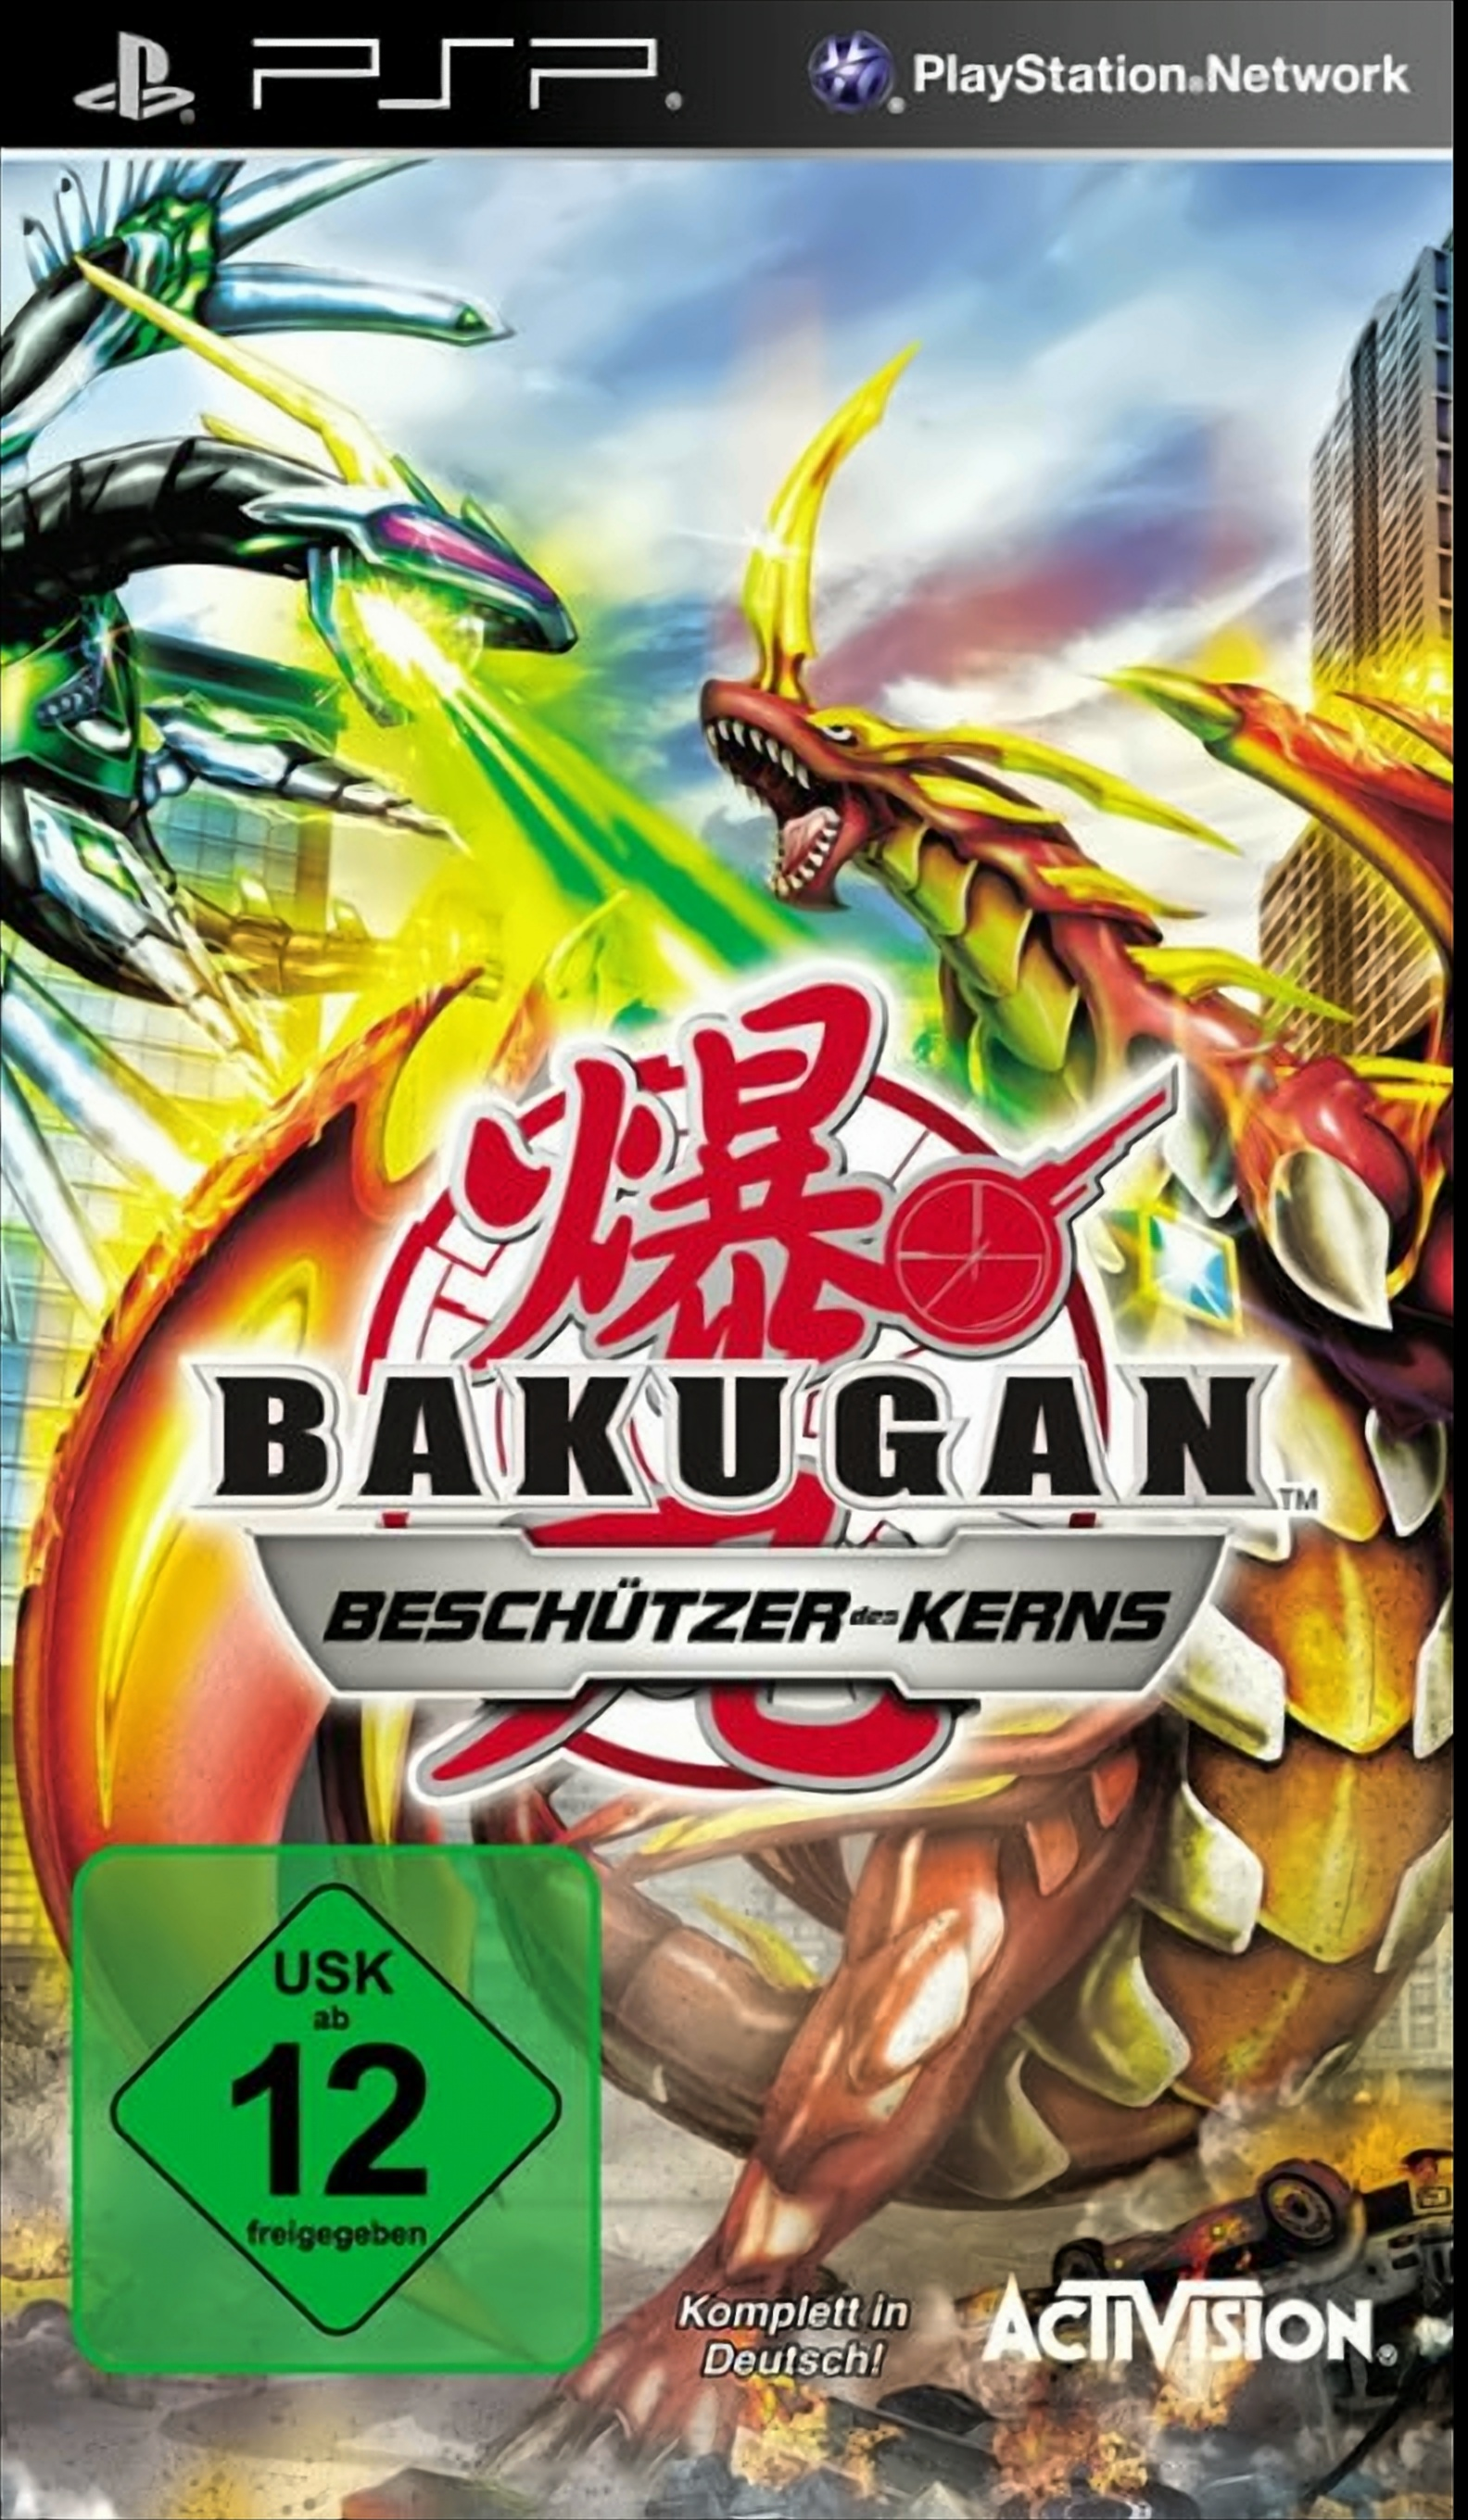 Battle [PSP] Kerns des - Brawlers: Bakugan Beschützer